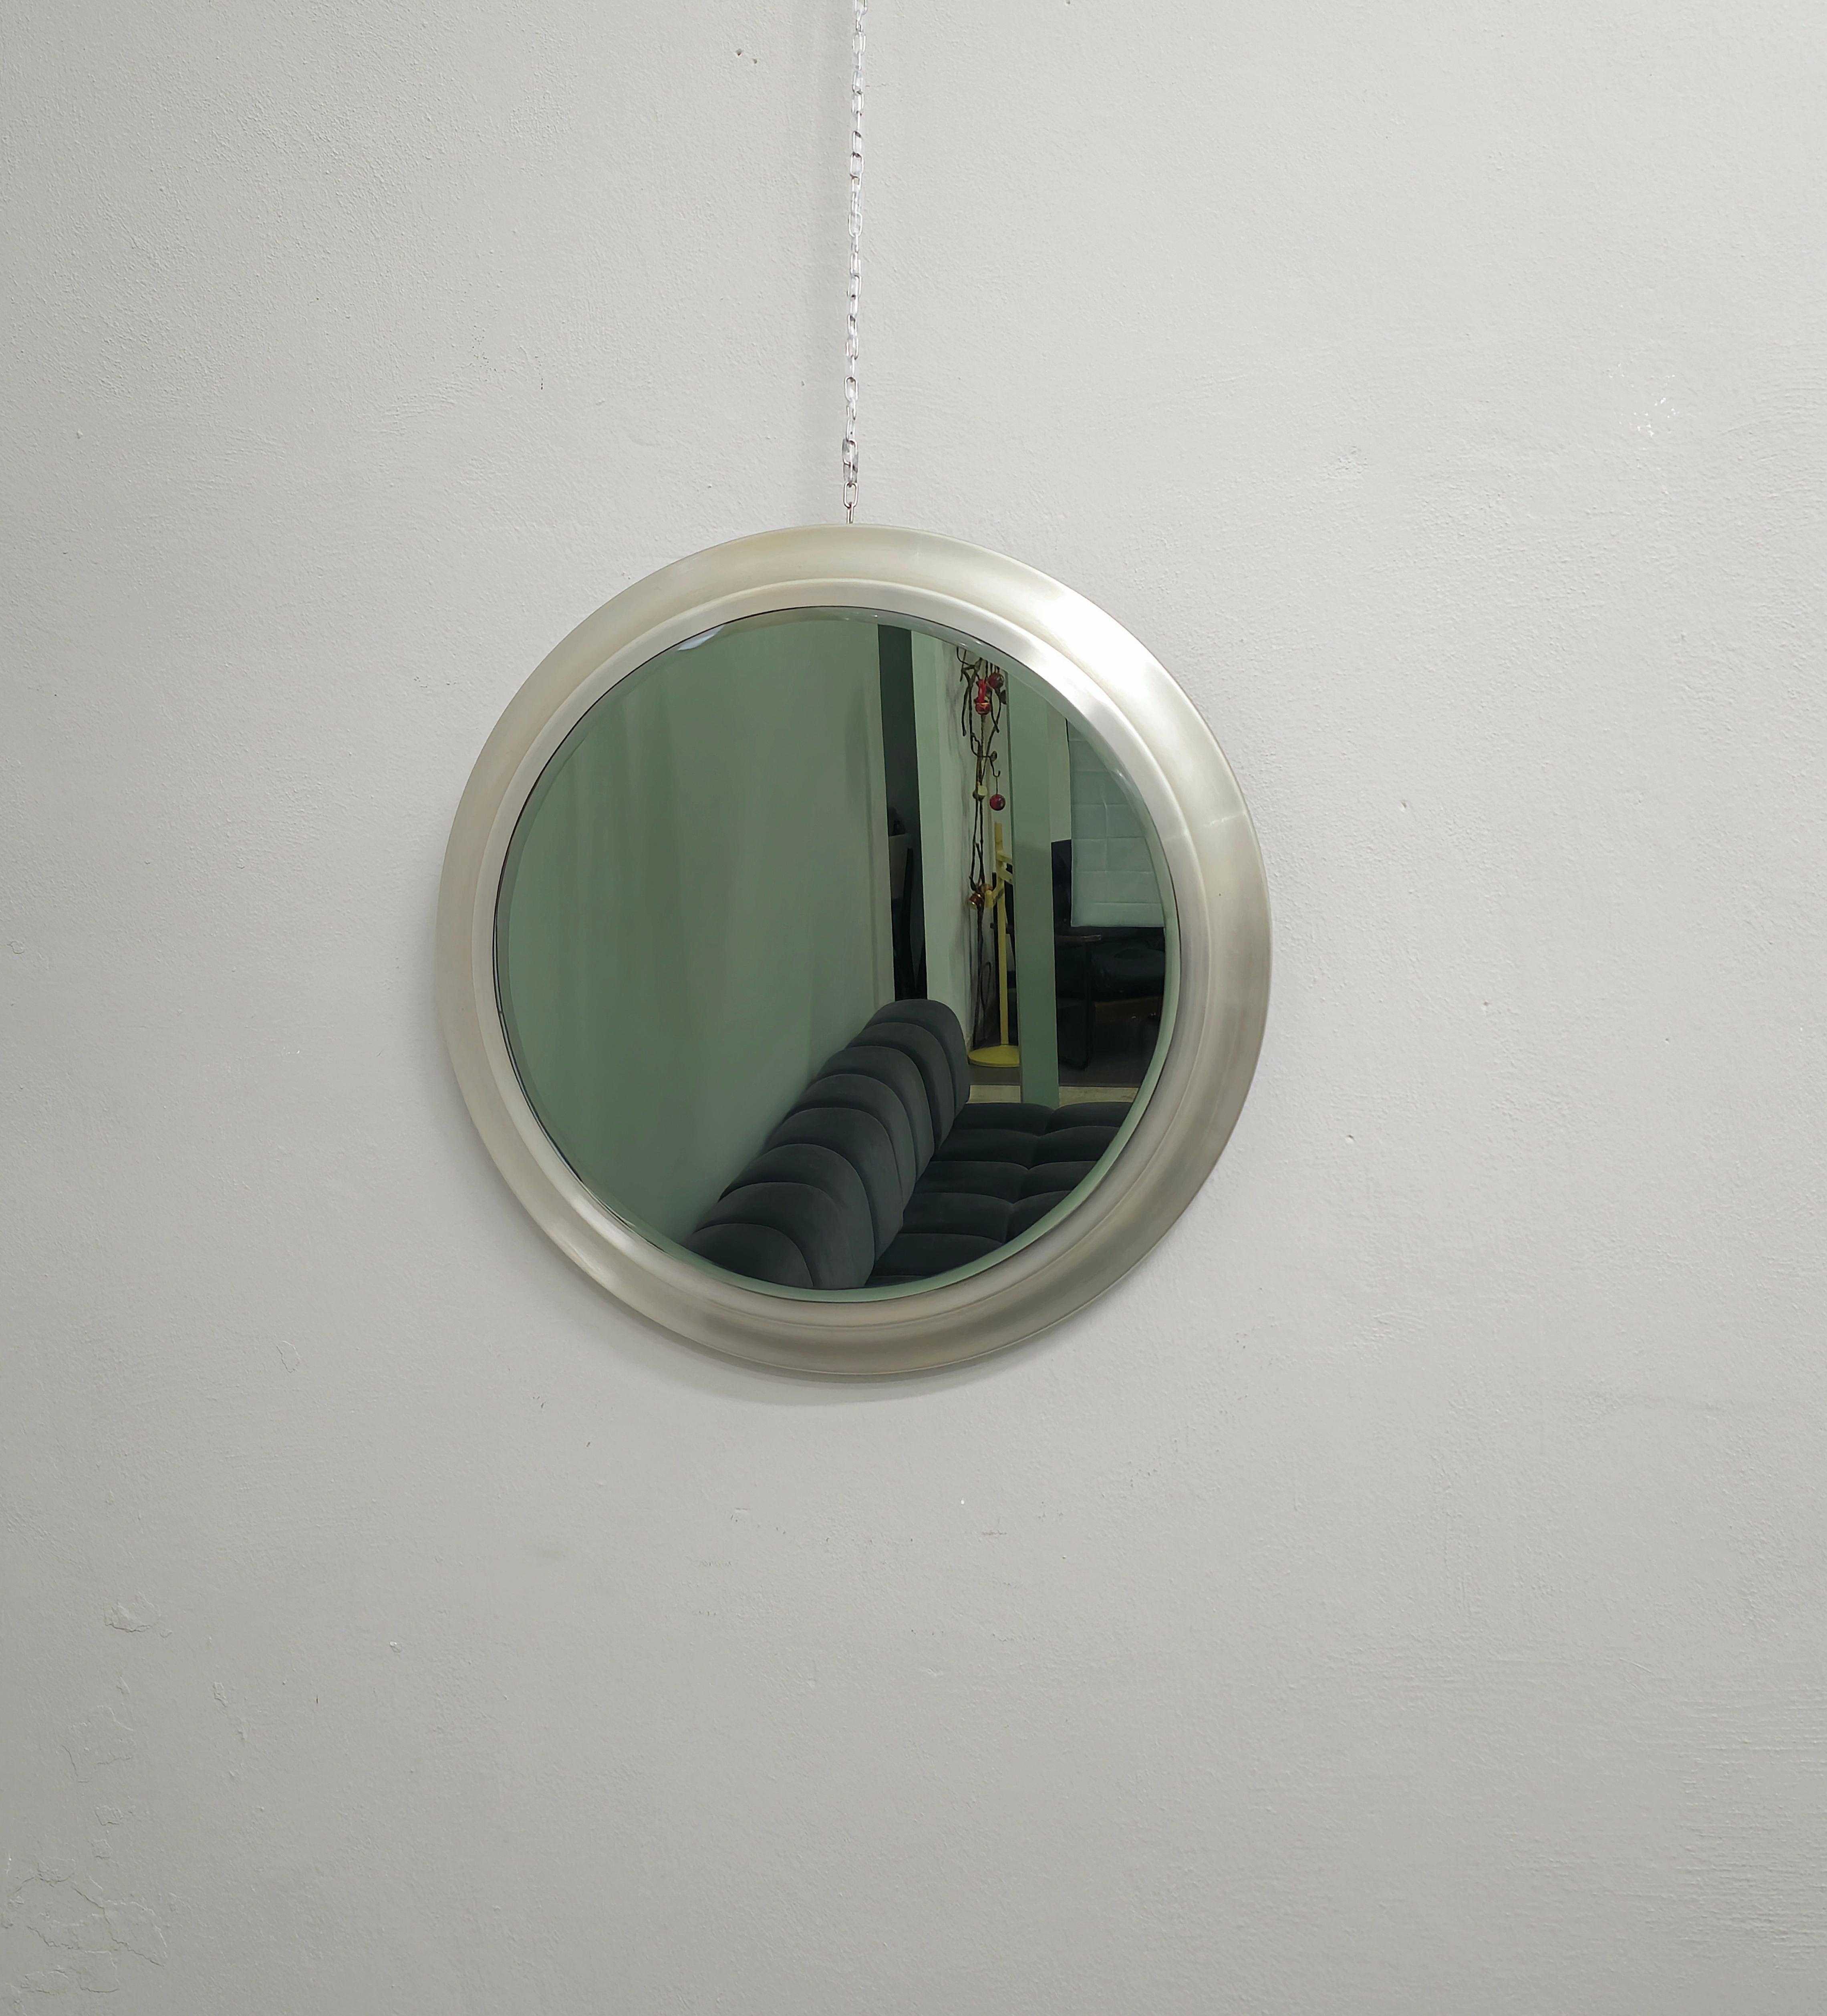 Miroir mural circulaire en aluminium brossé avec verre fumé et bord poli. Fabriqué en Italie dans les années 70.



Note : Nous essayons d'offrir à nos clients un excellent service, même pour les envois dans le monde entier, en collaborant avec l'un